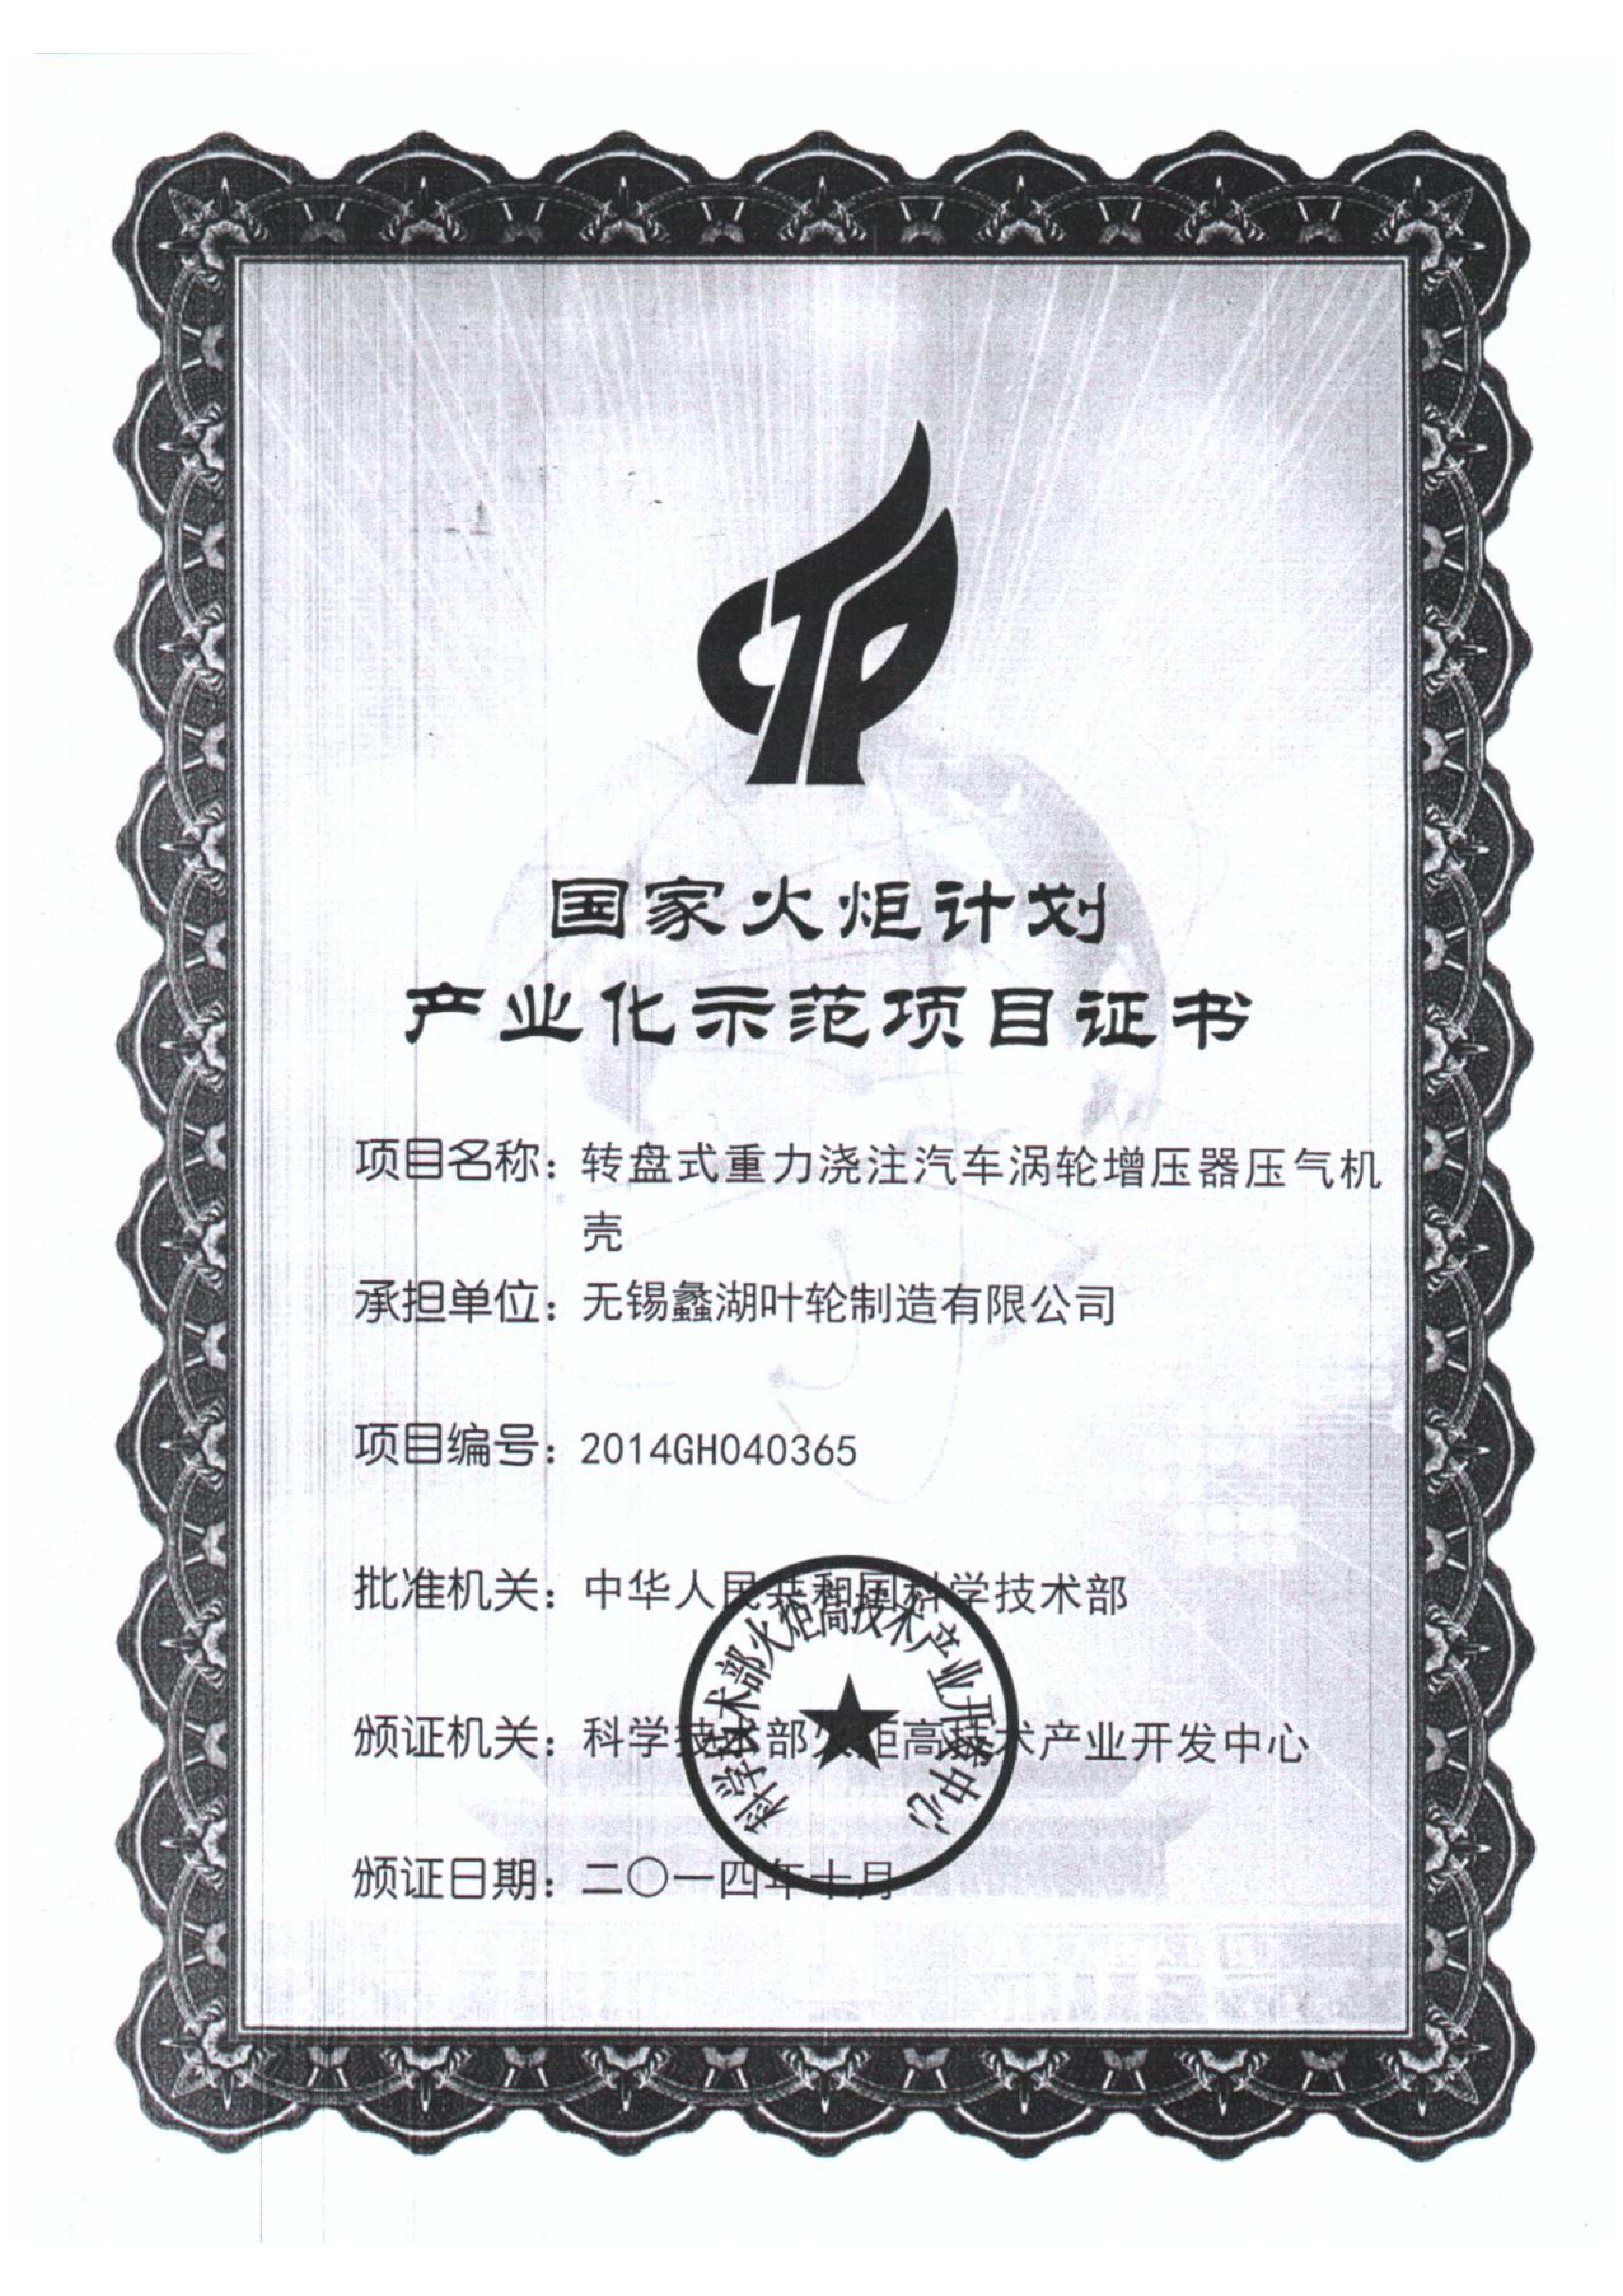 国家火炬计划产业化示范项目证书2014_00.png